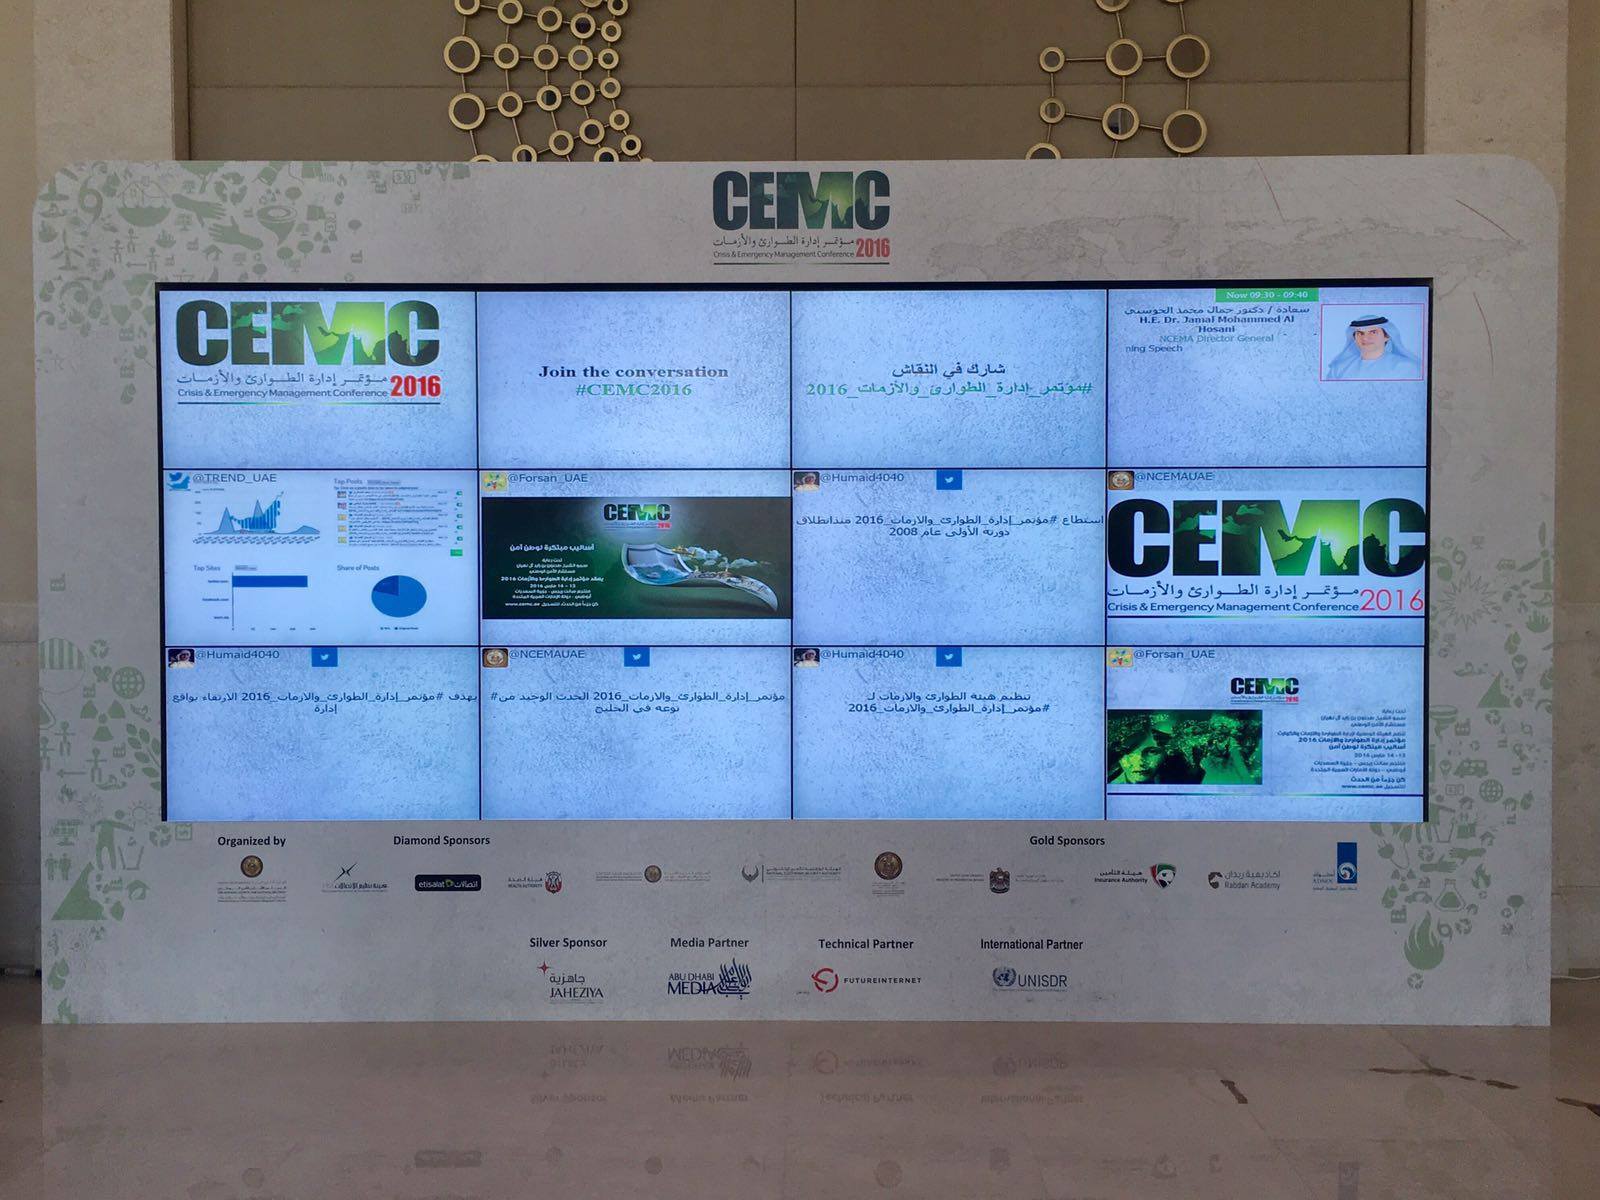 Social Media Wall GEMC 2016 - Dubai - Dubai